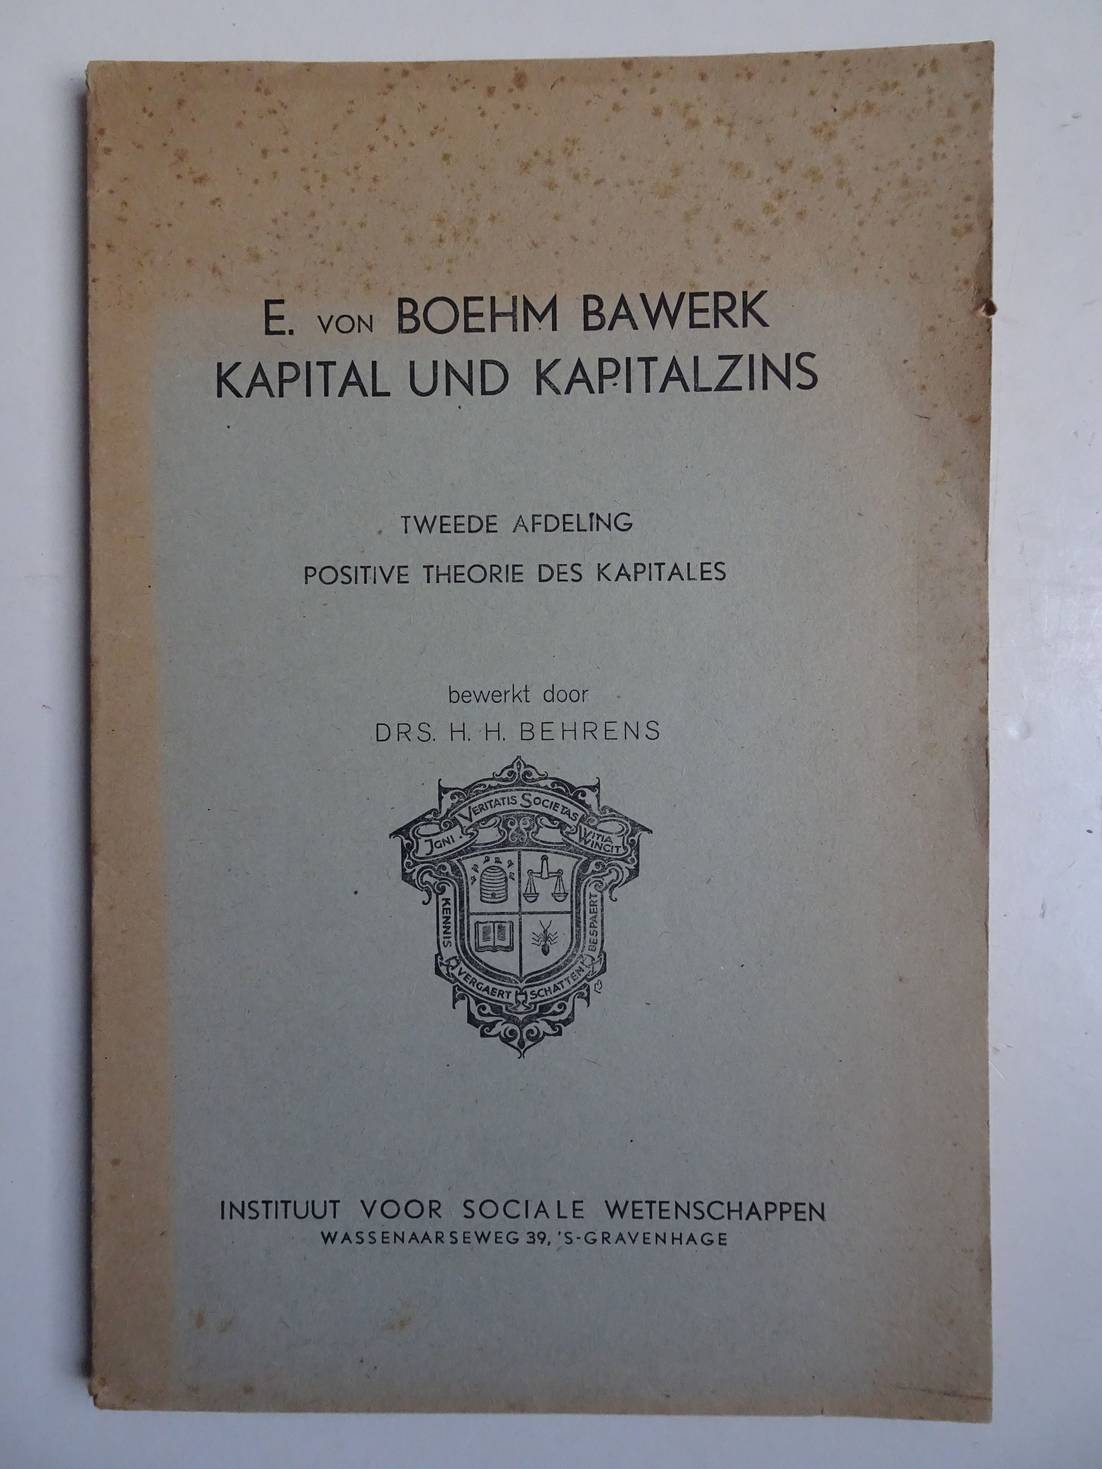 Boehm Bawerk, E. von. - Kapital und Kapitalzins. Tweede afdeling: Positive Theorie des Kapitales.